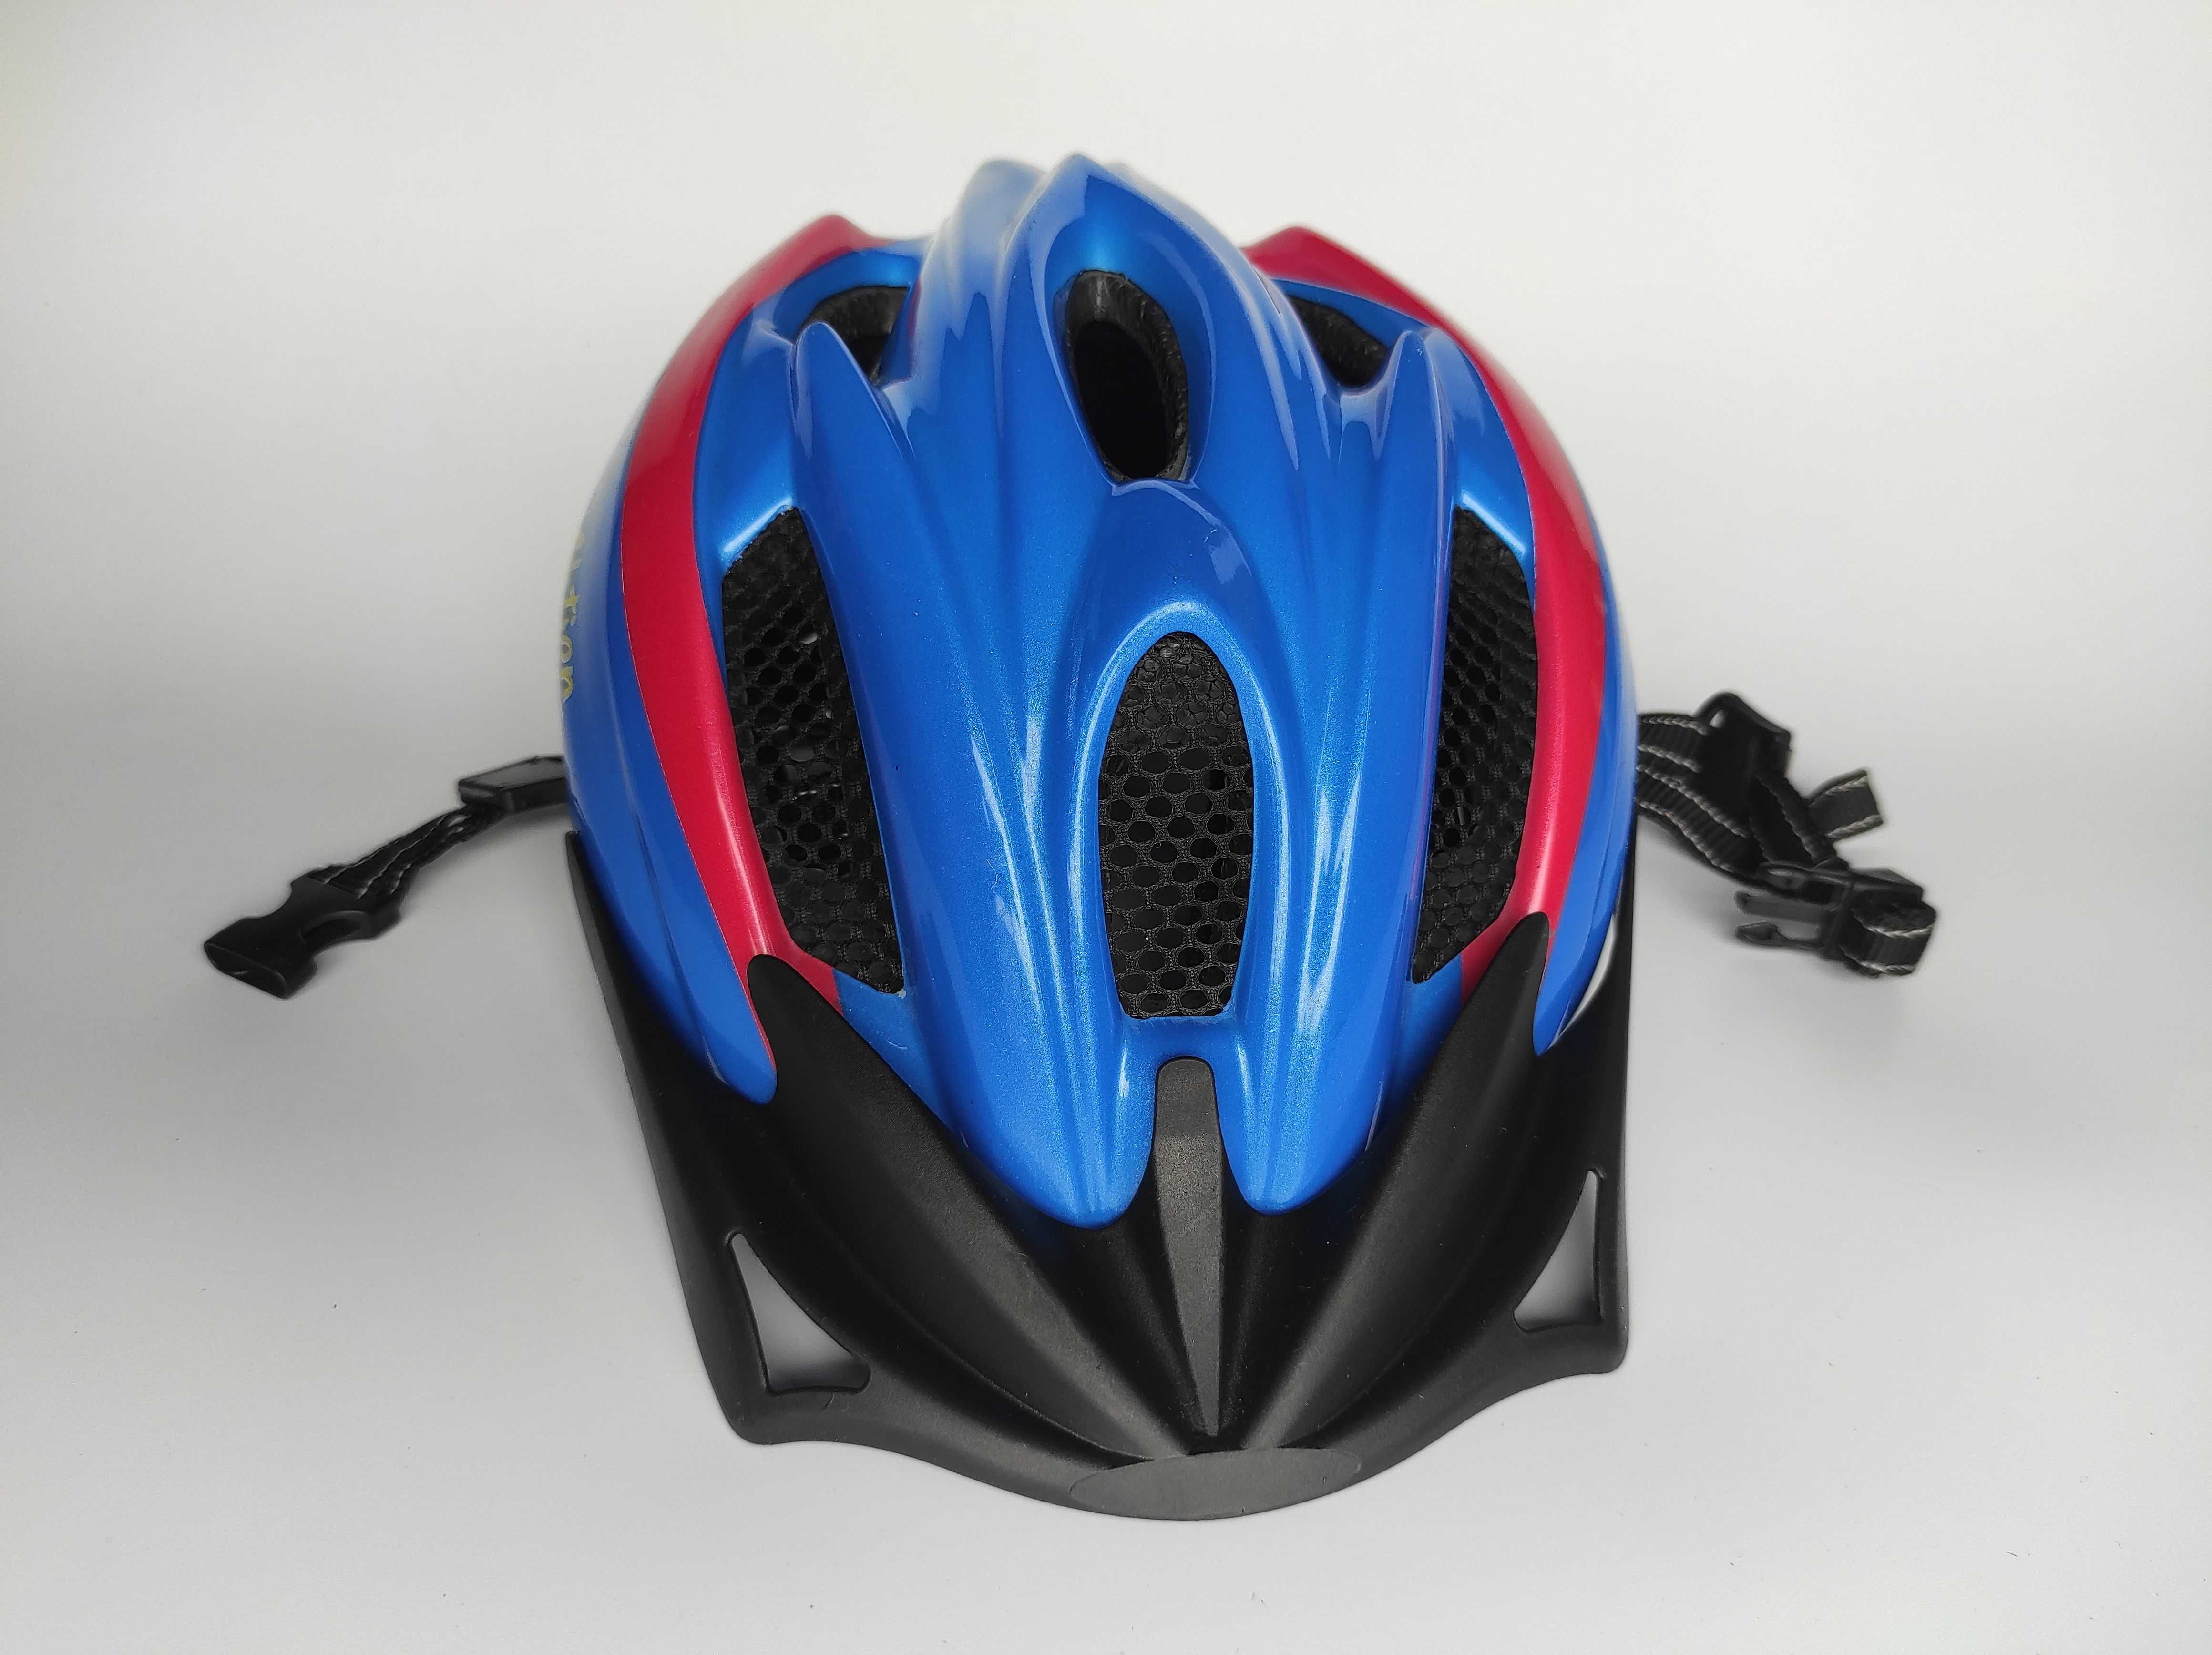 Шлем защитный Ked Flitzi, размер 52-58см, велосипедный, Германия.